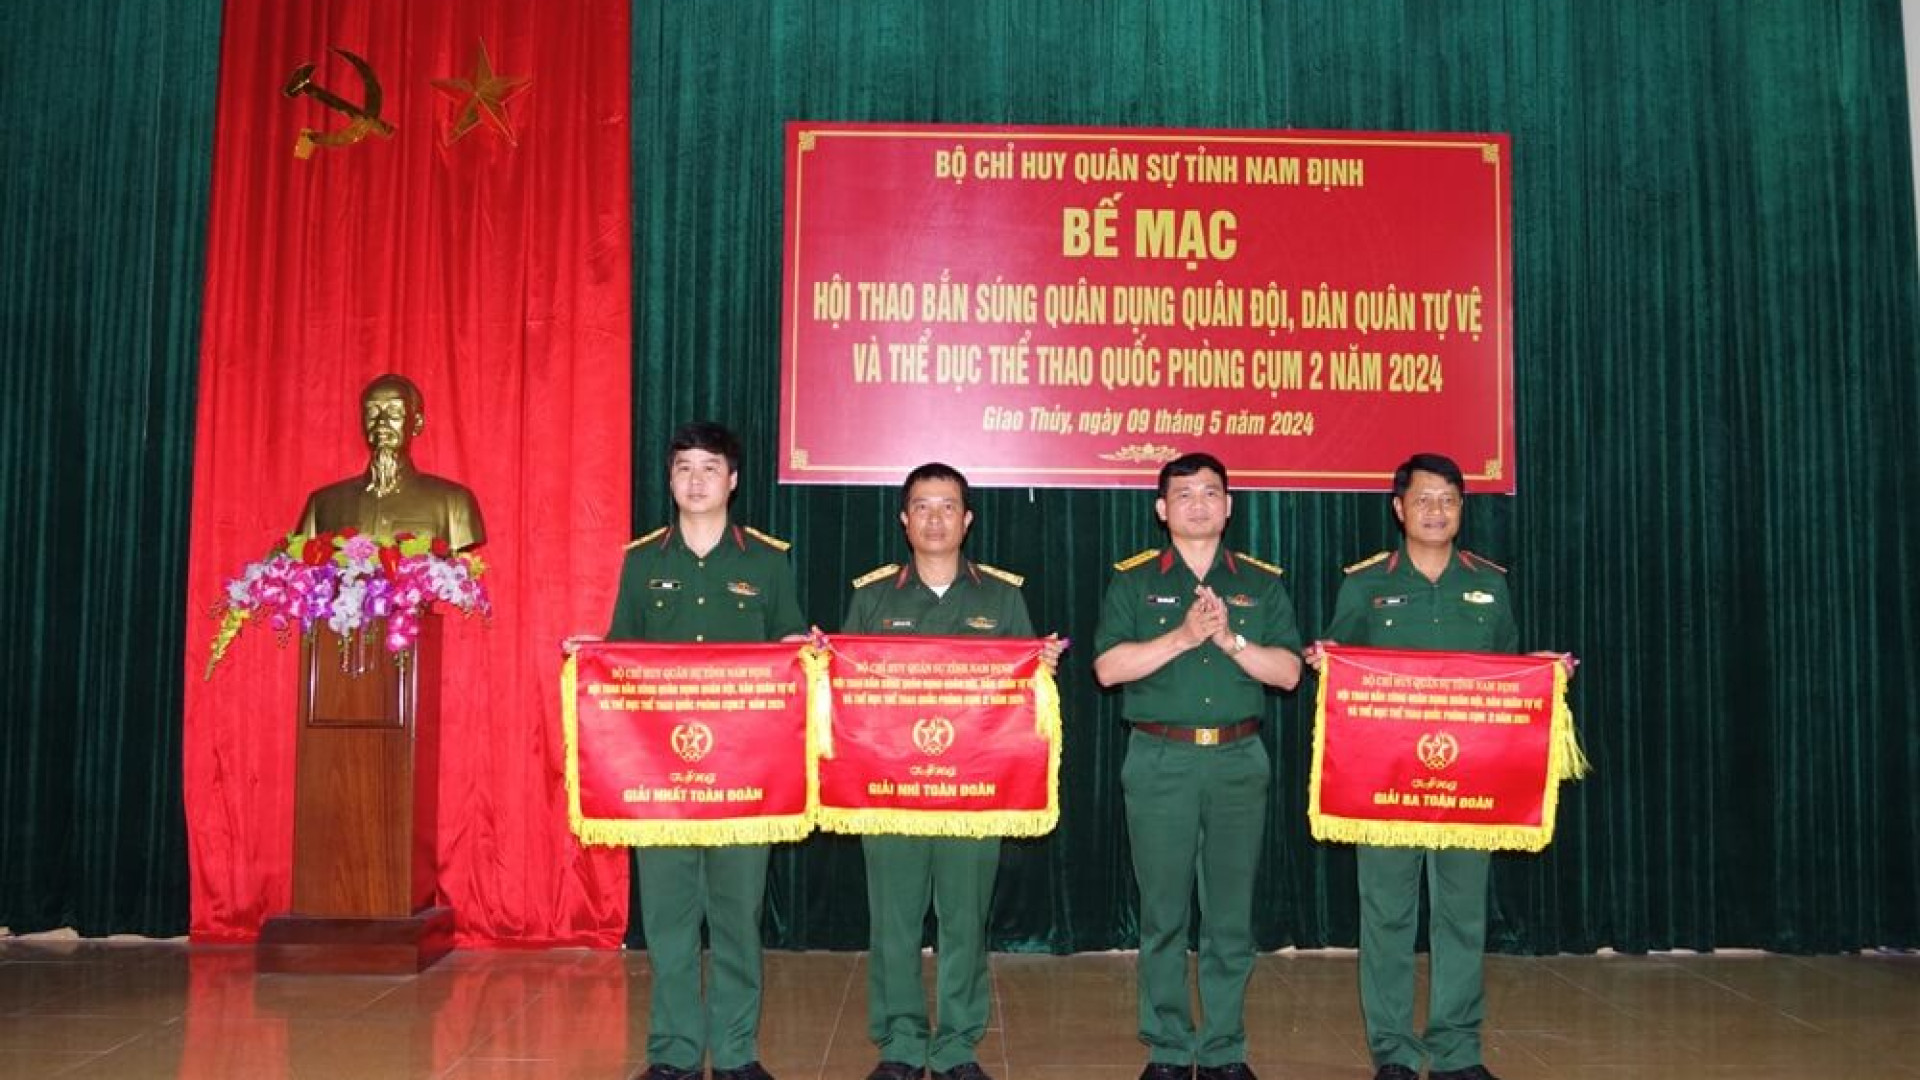 Bộ CHQS tỉnh Nam Định hội thao bắn súng quân dụng và thể dục thể thao quốc phòng năm 2024